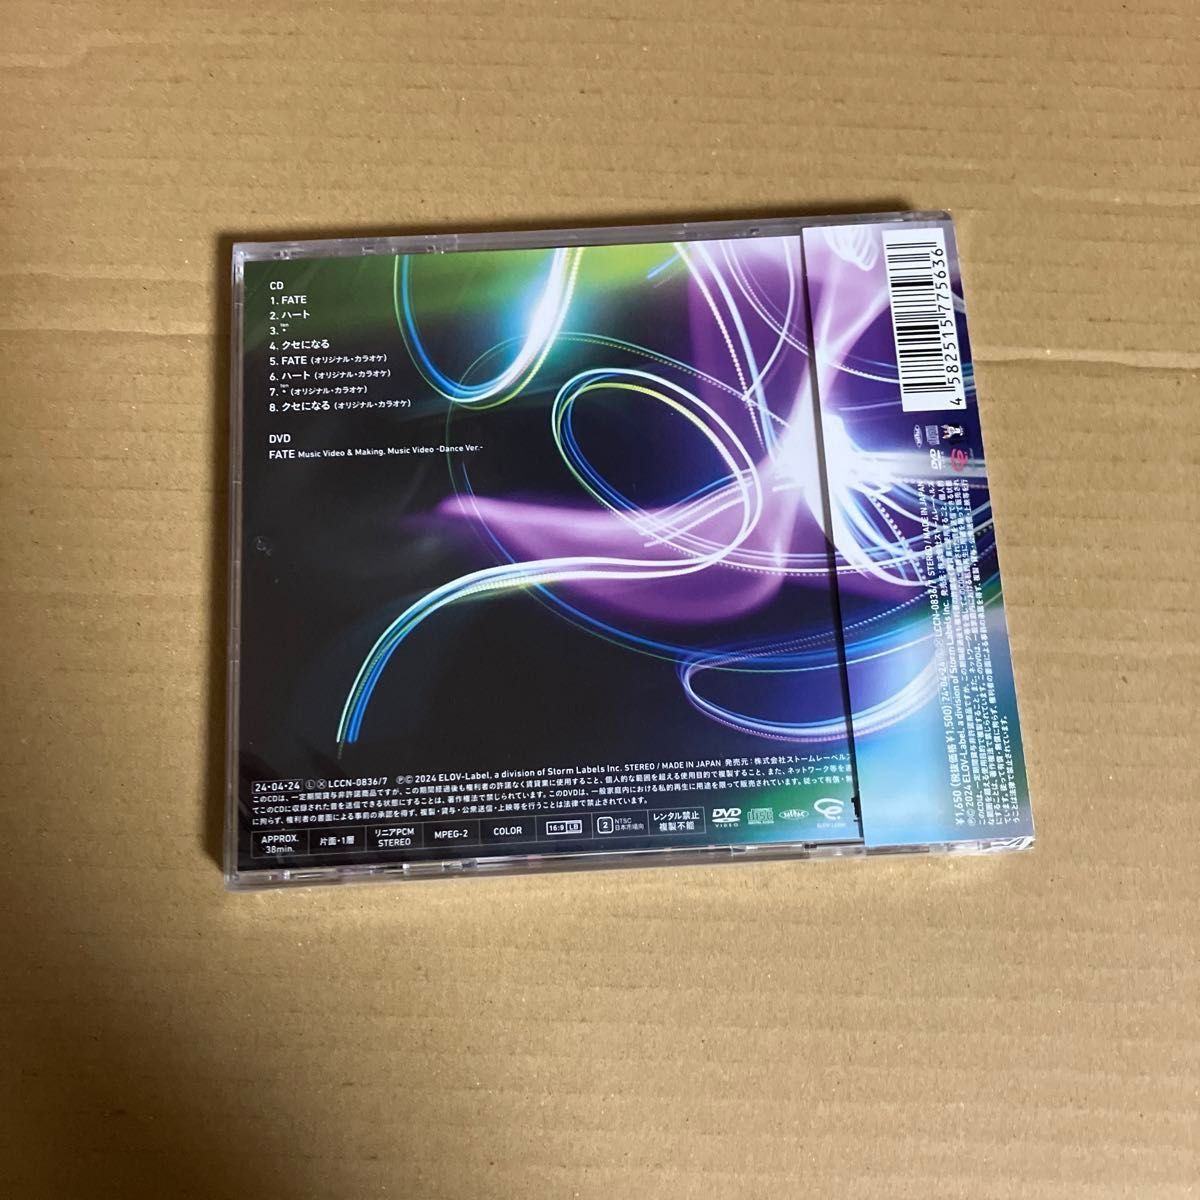 (神山智洋) (外付) 初回盤B DVD付 視聴シリアルコード (2) 封入 WEST. CD+DVD/FATE/ハート 